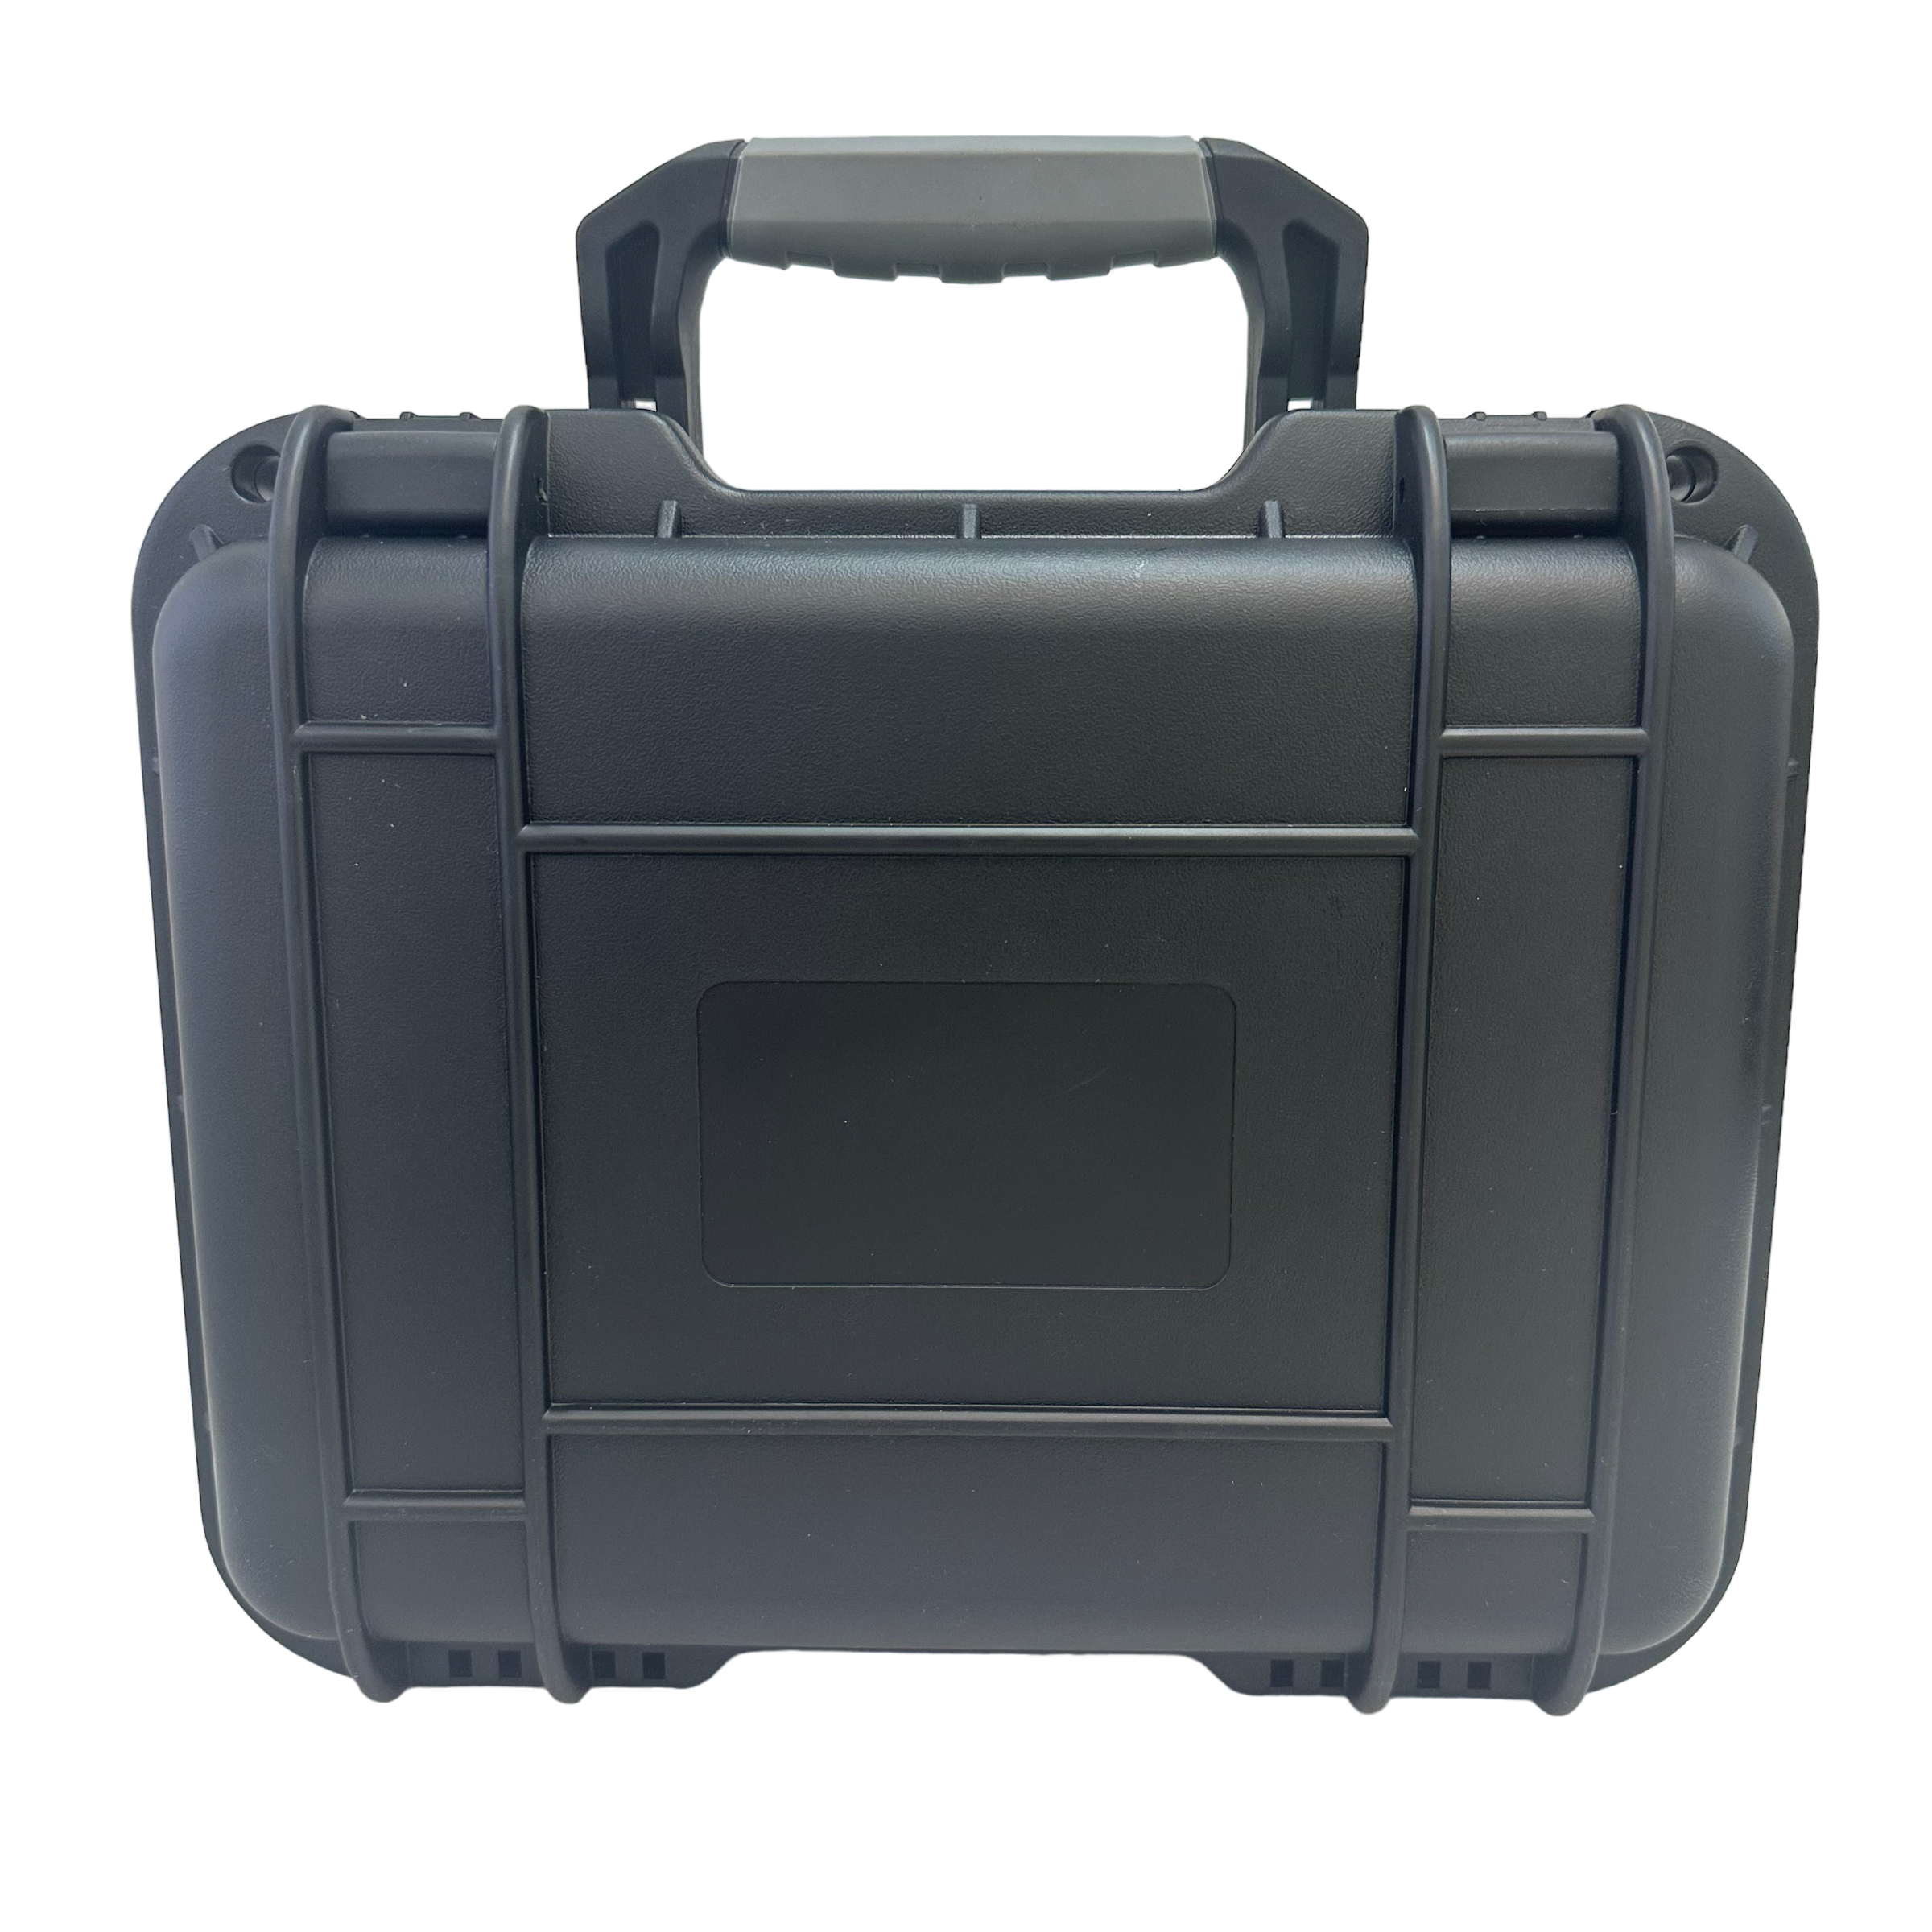 Watch Box Case Plastic Waterproof 6 Slot